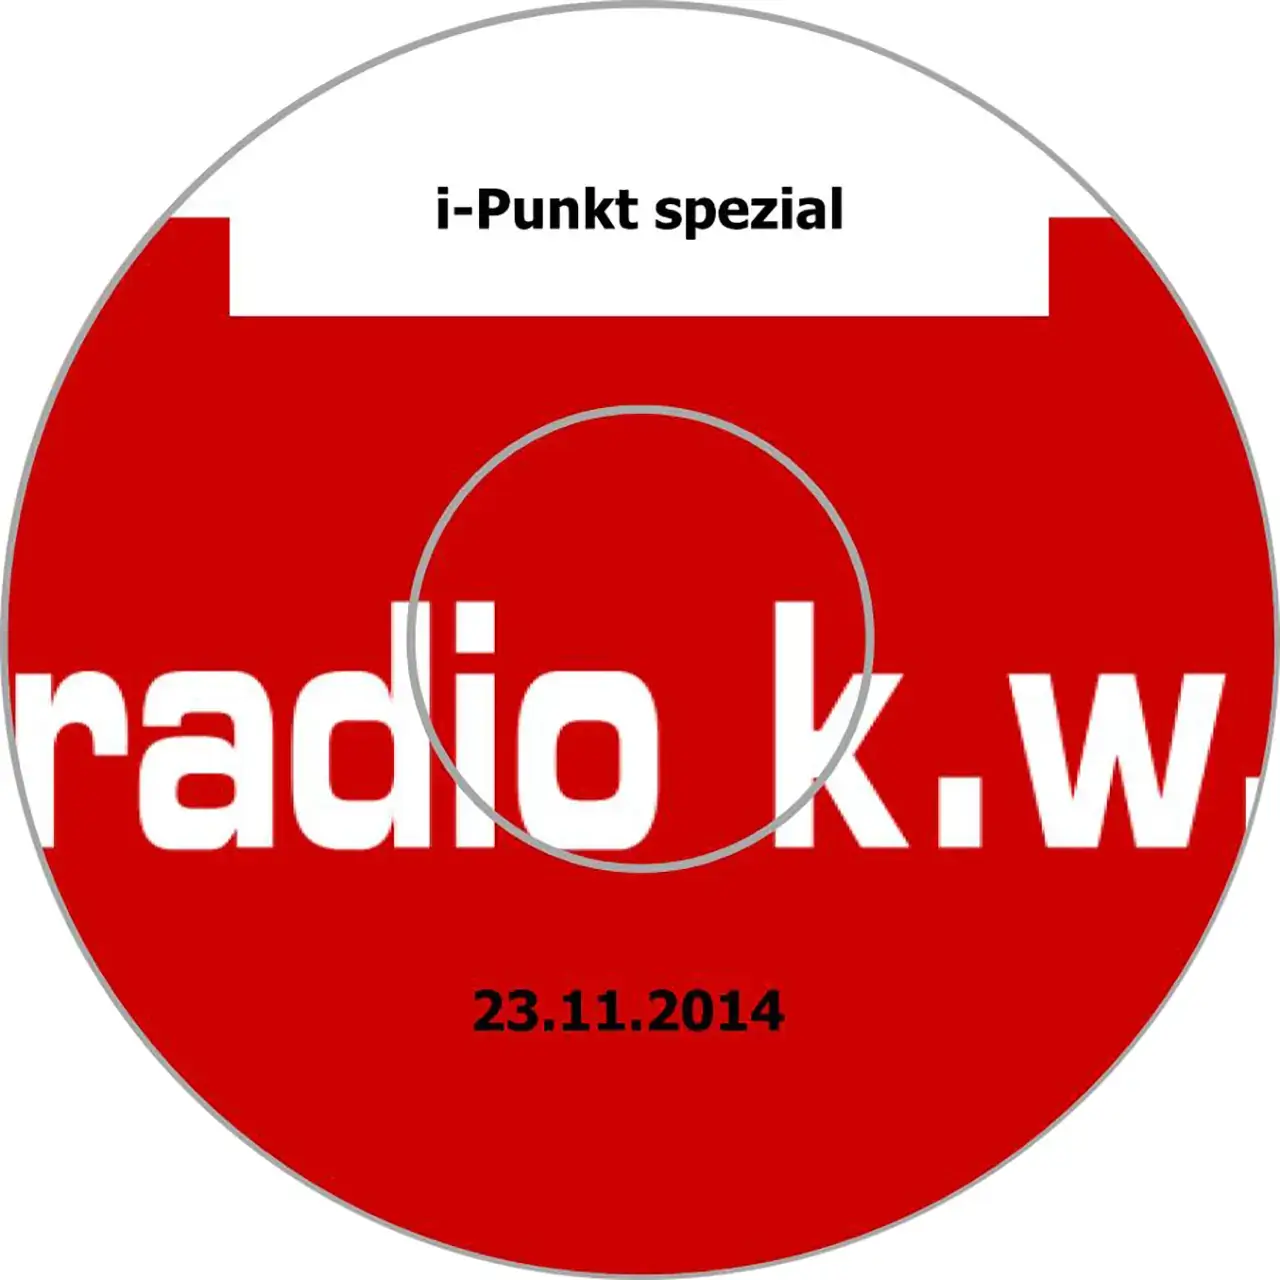 Projekte 2014 - Erinnern für die Zukunft - CD-Radio k.w. - i-Punkt spezial - CD-Druckseite